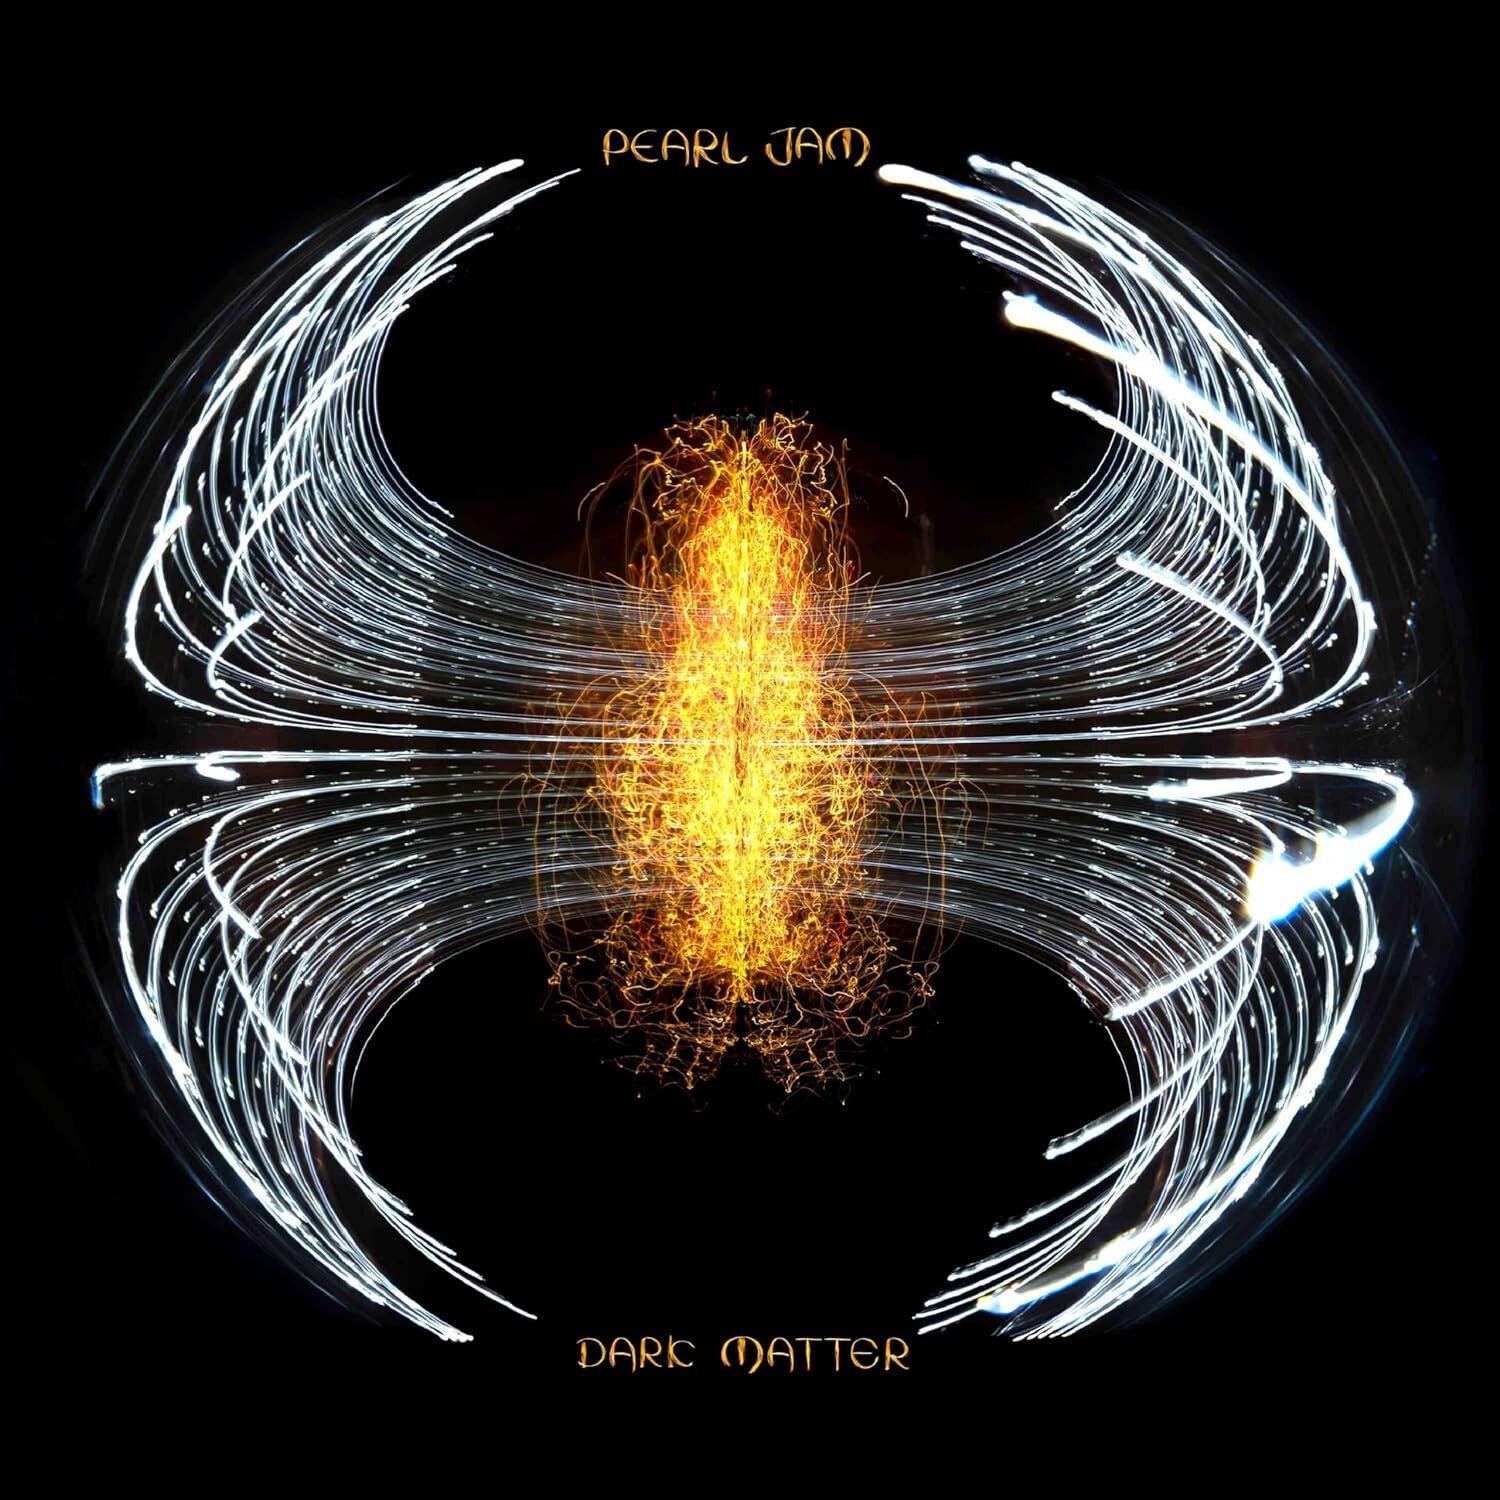 CD de música Pearl Jam - Dark Matter (CD)